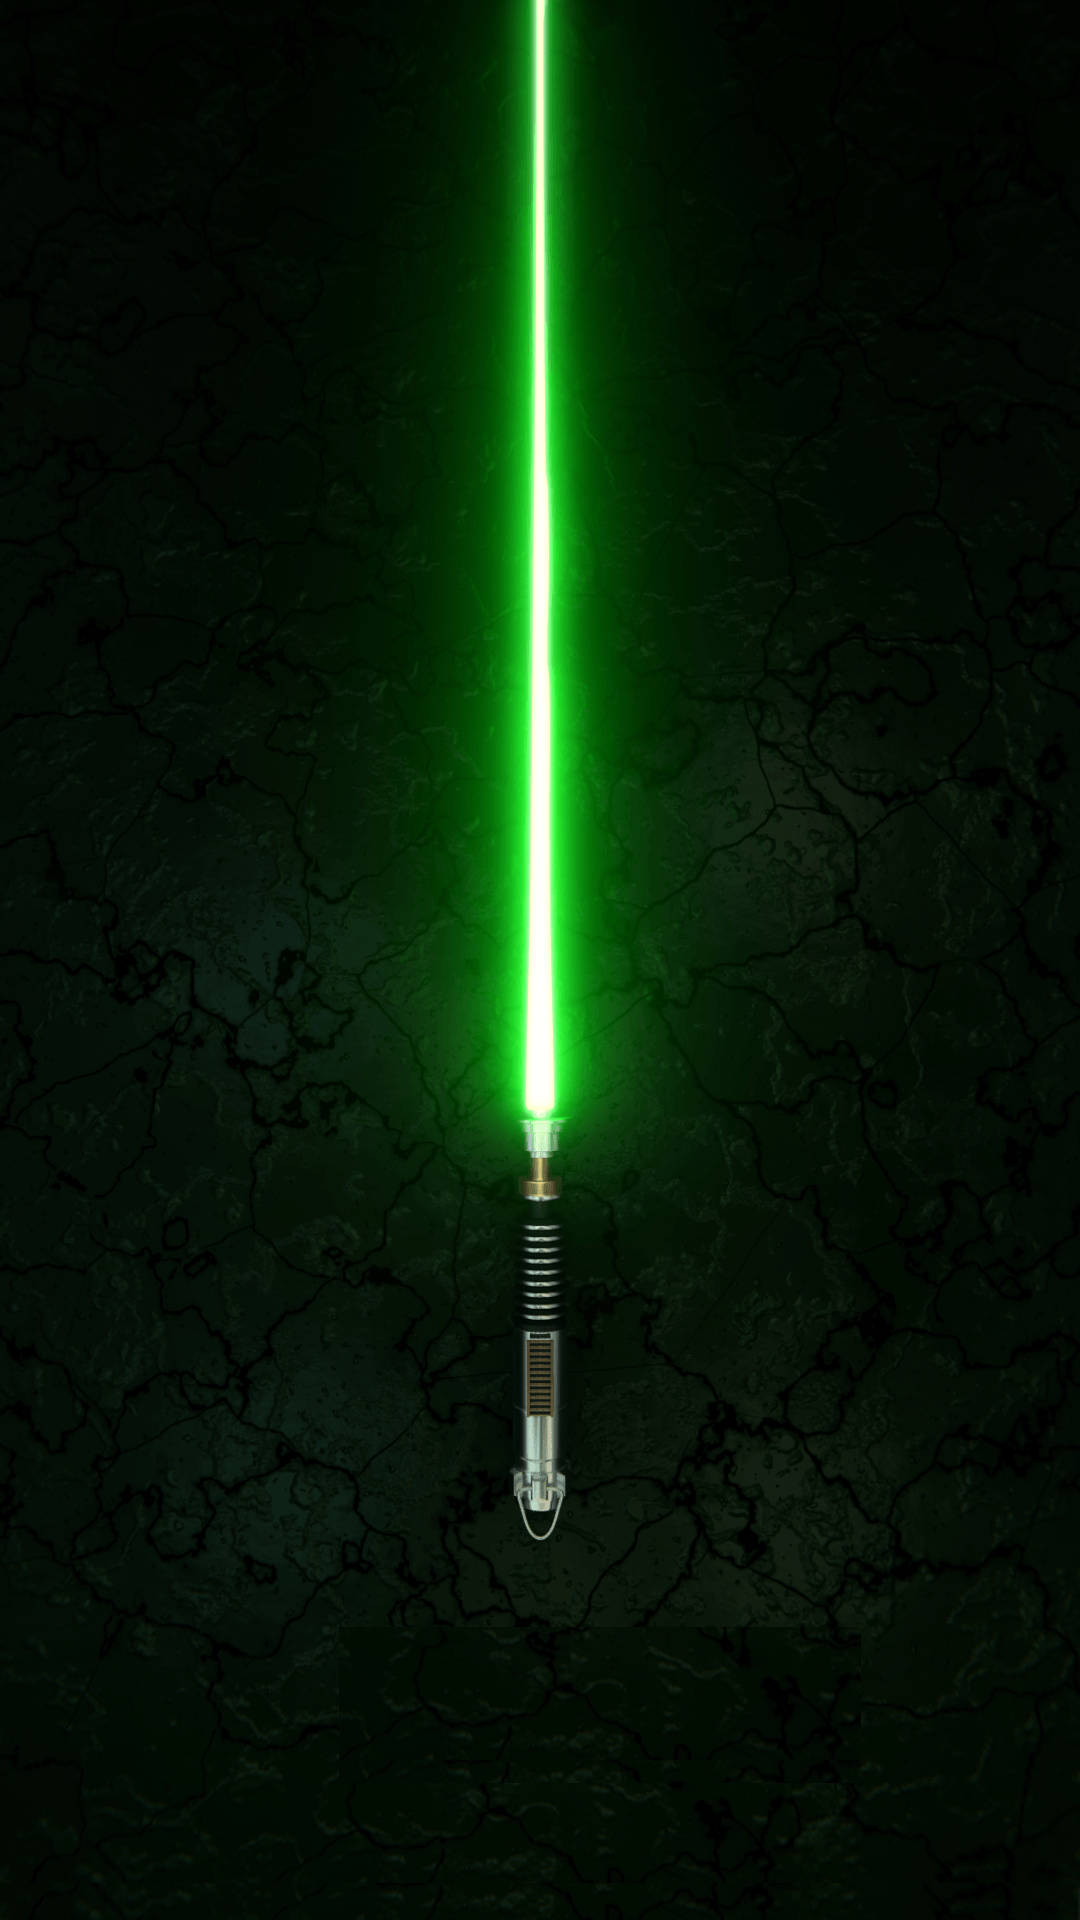 Sablede Luz Verde En Teléfono Celular De Star Wars. Fondo de pantalla